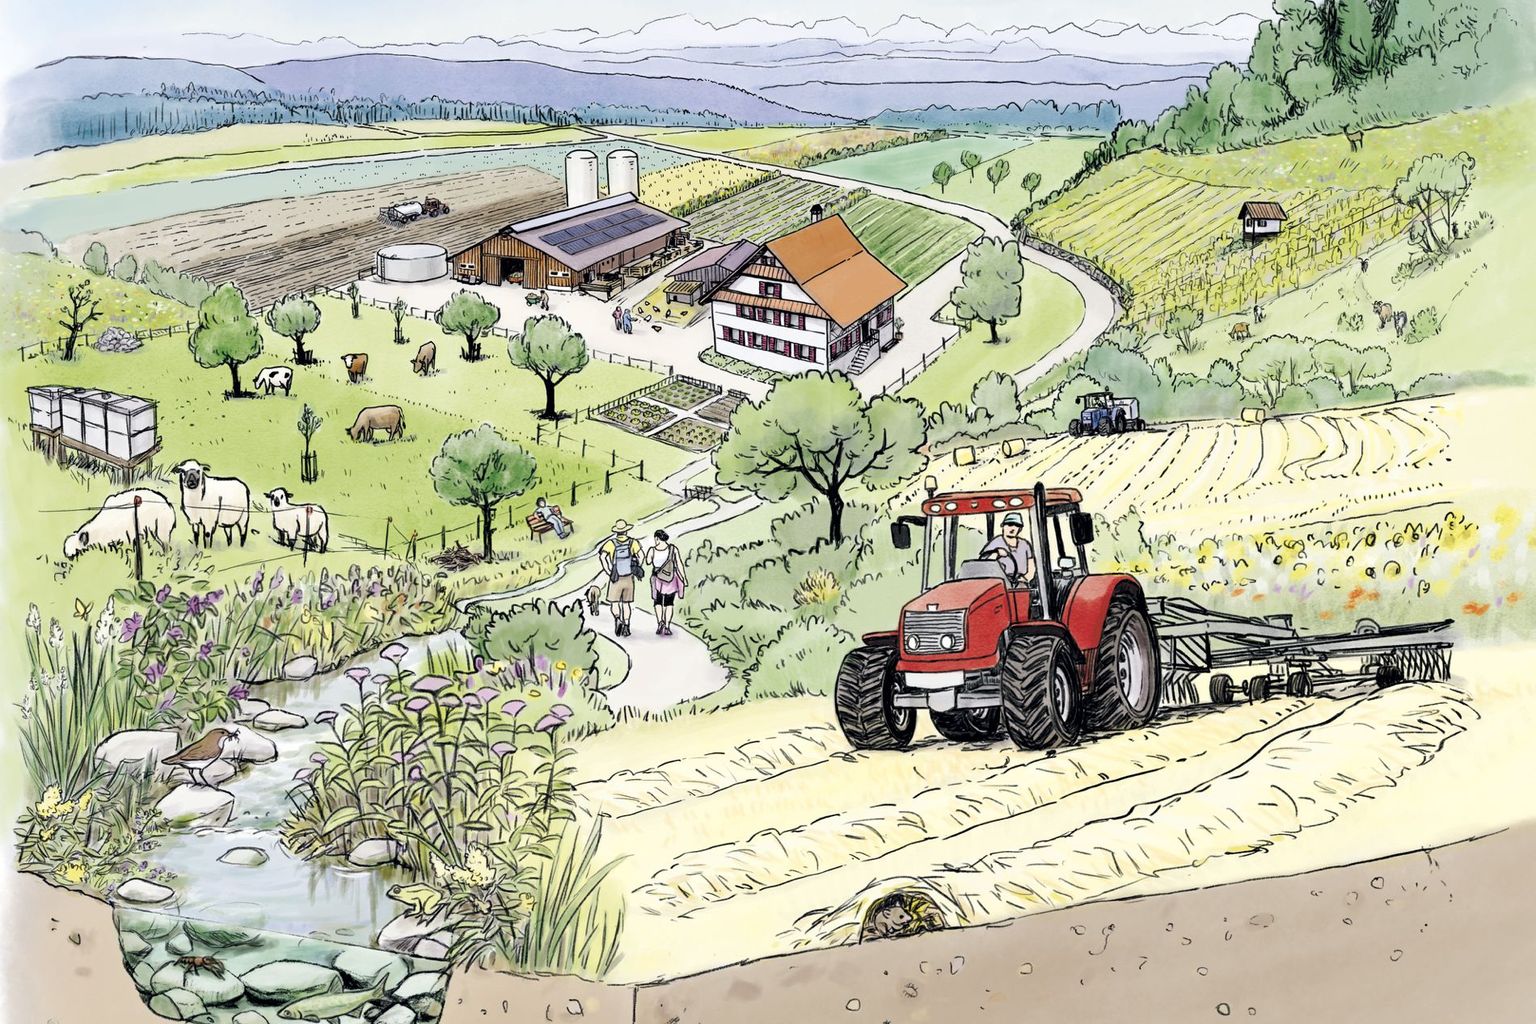 Bauernhof, von Feldern umgeben, Berge im Hintergrund. Im Vordergrund ein Traktor.